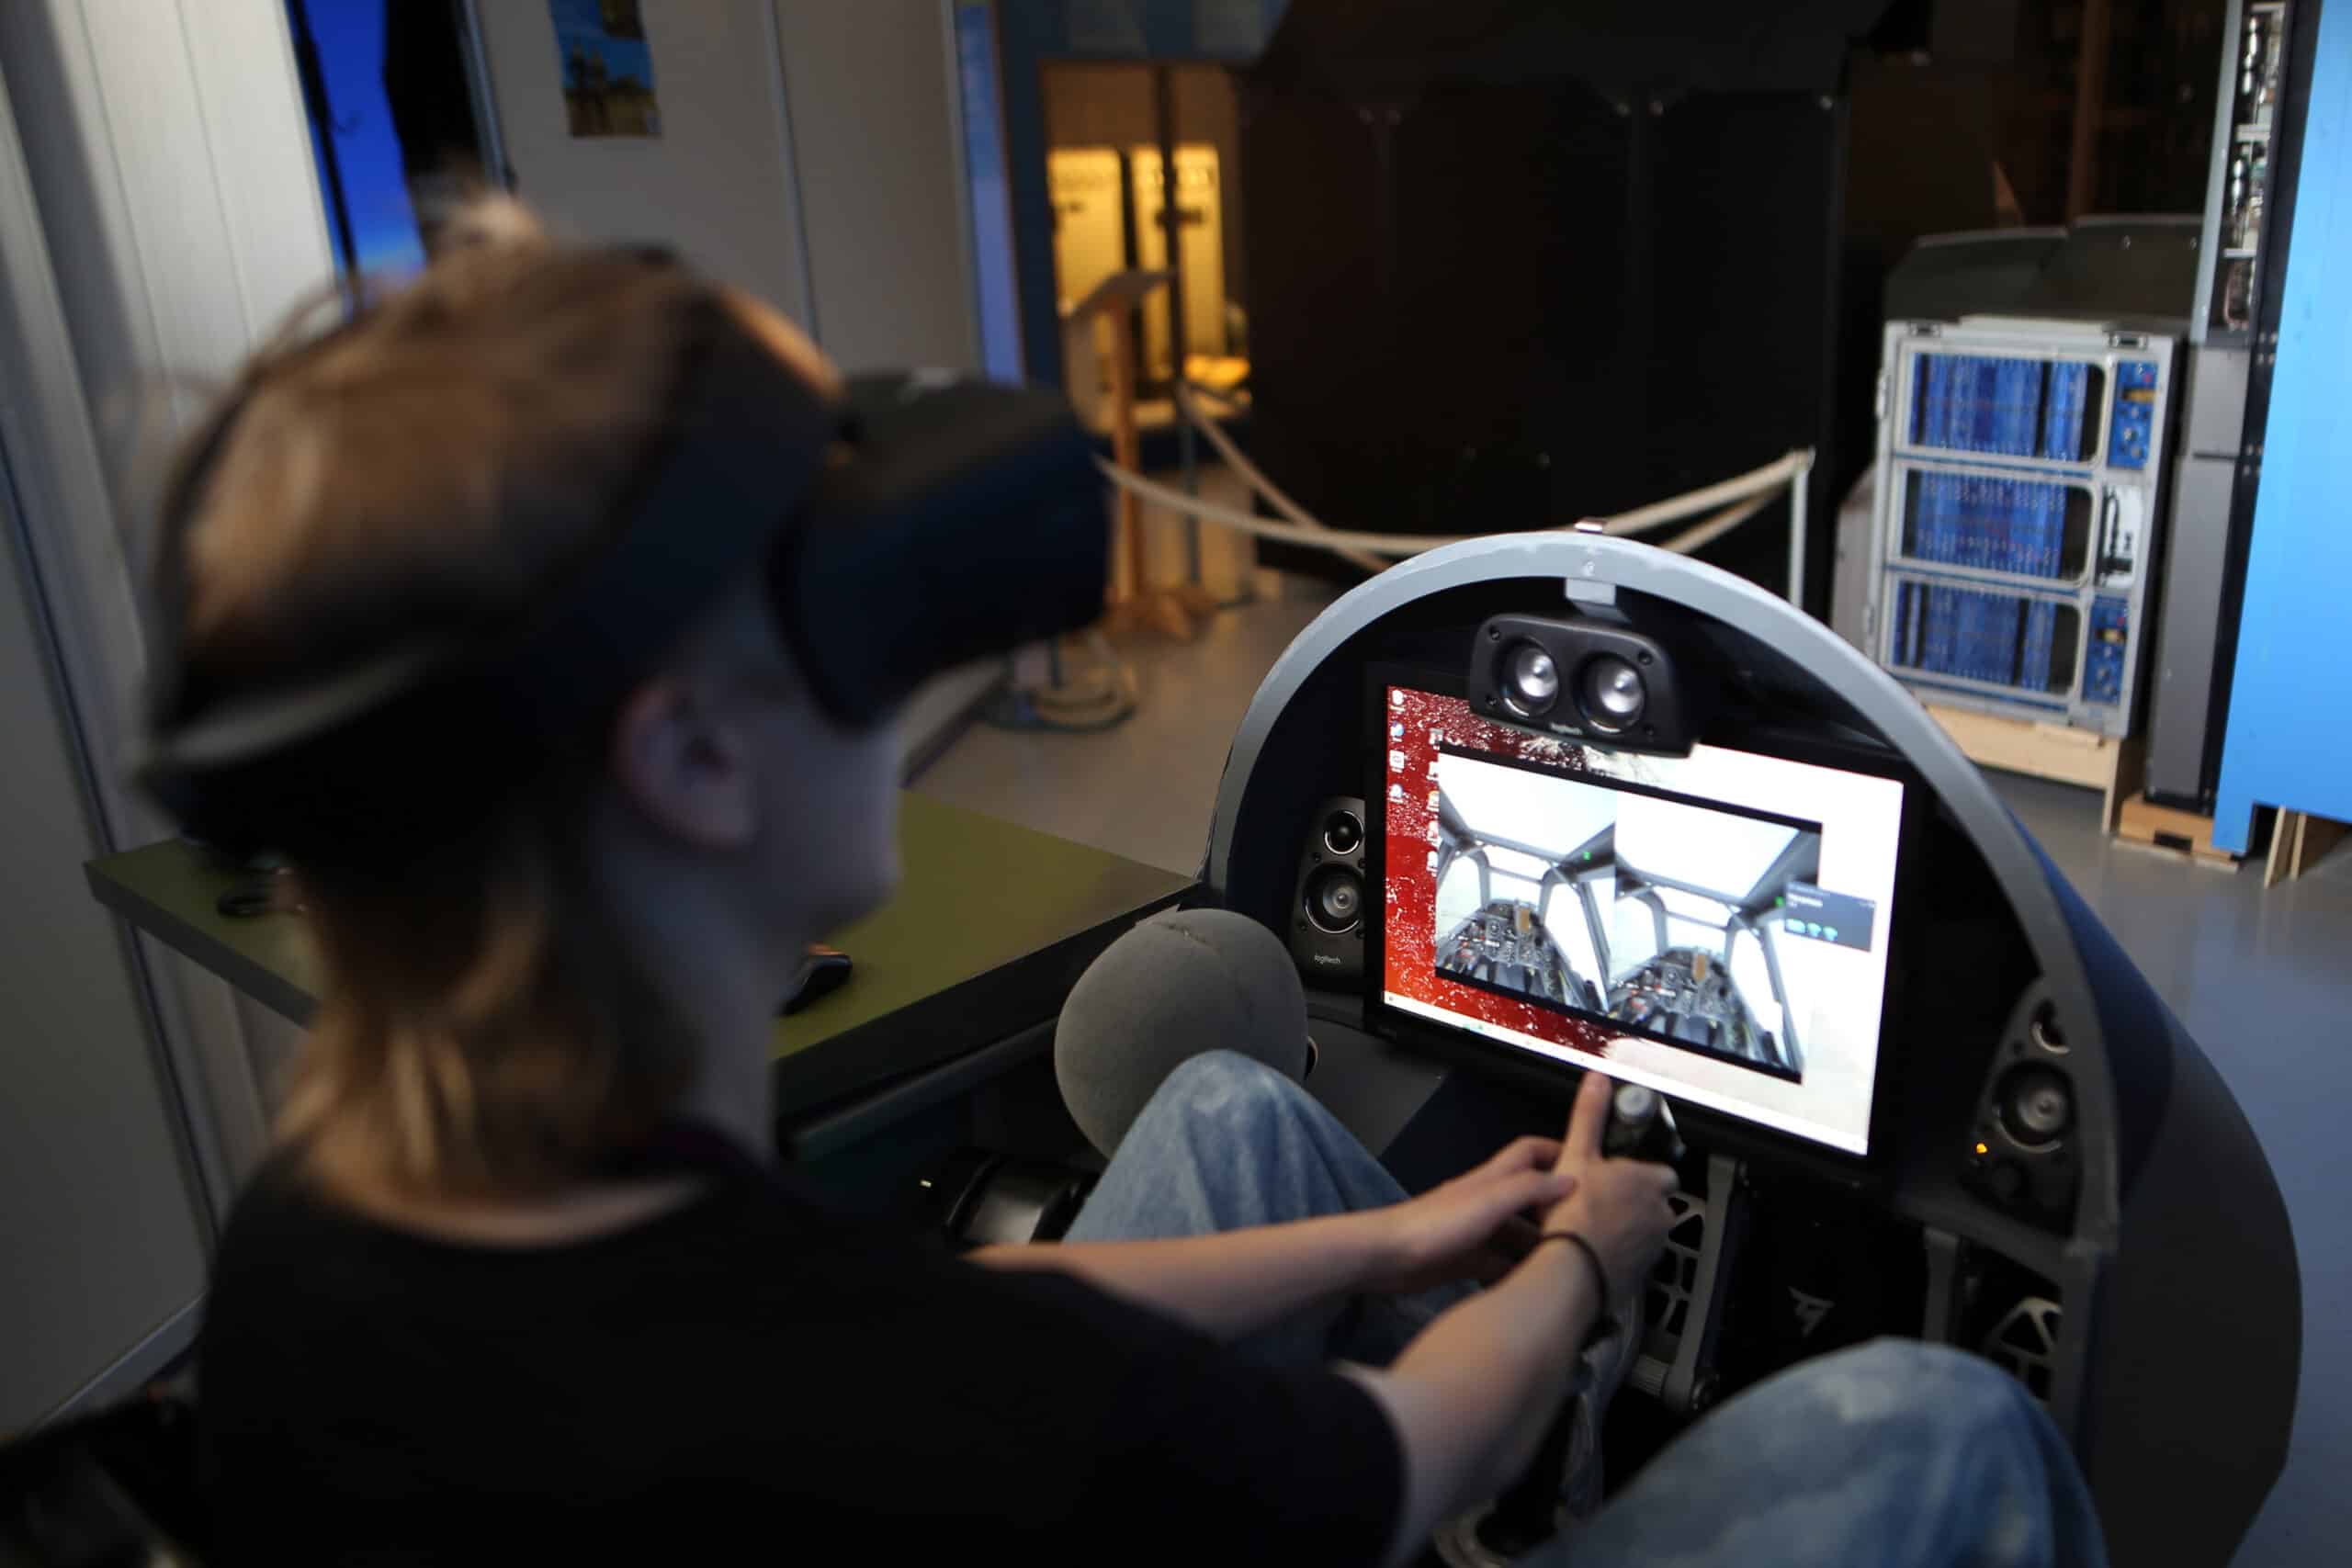 Asiakas istuu simulaattorin ohjaamossa vr-kypärä päässään ja pitää käsillään kiinni ohjaussauvasta.